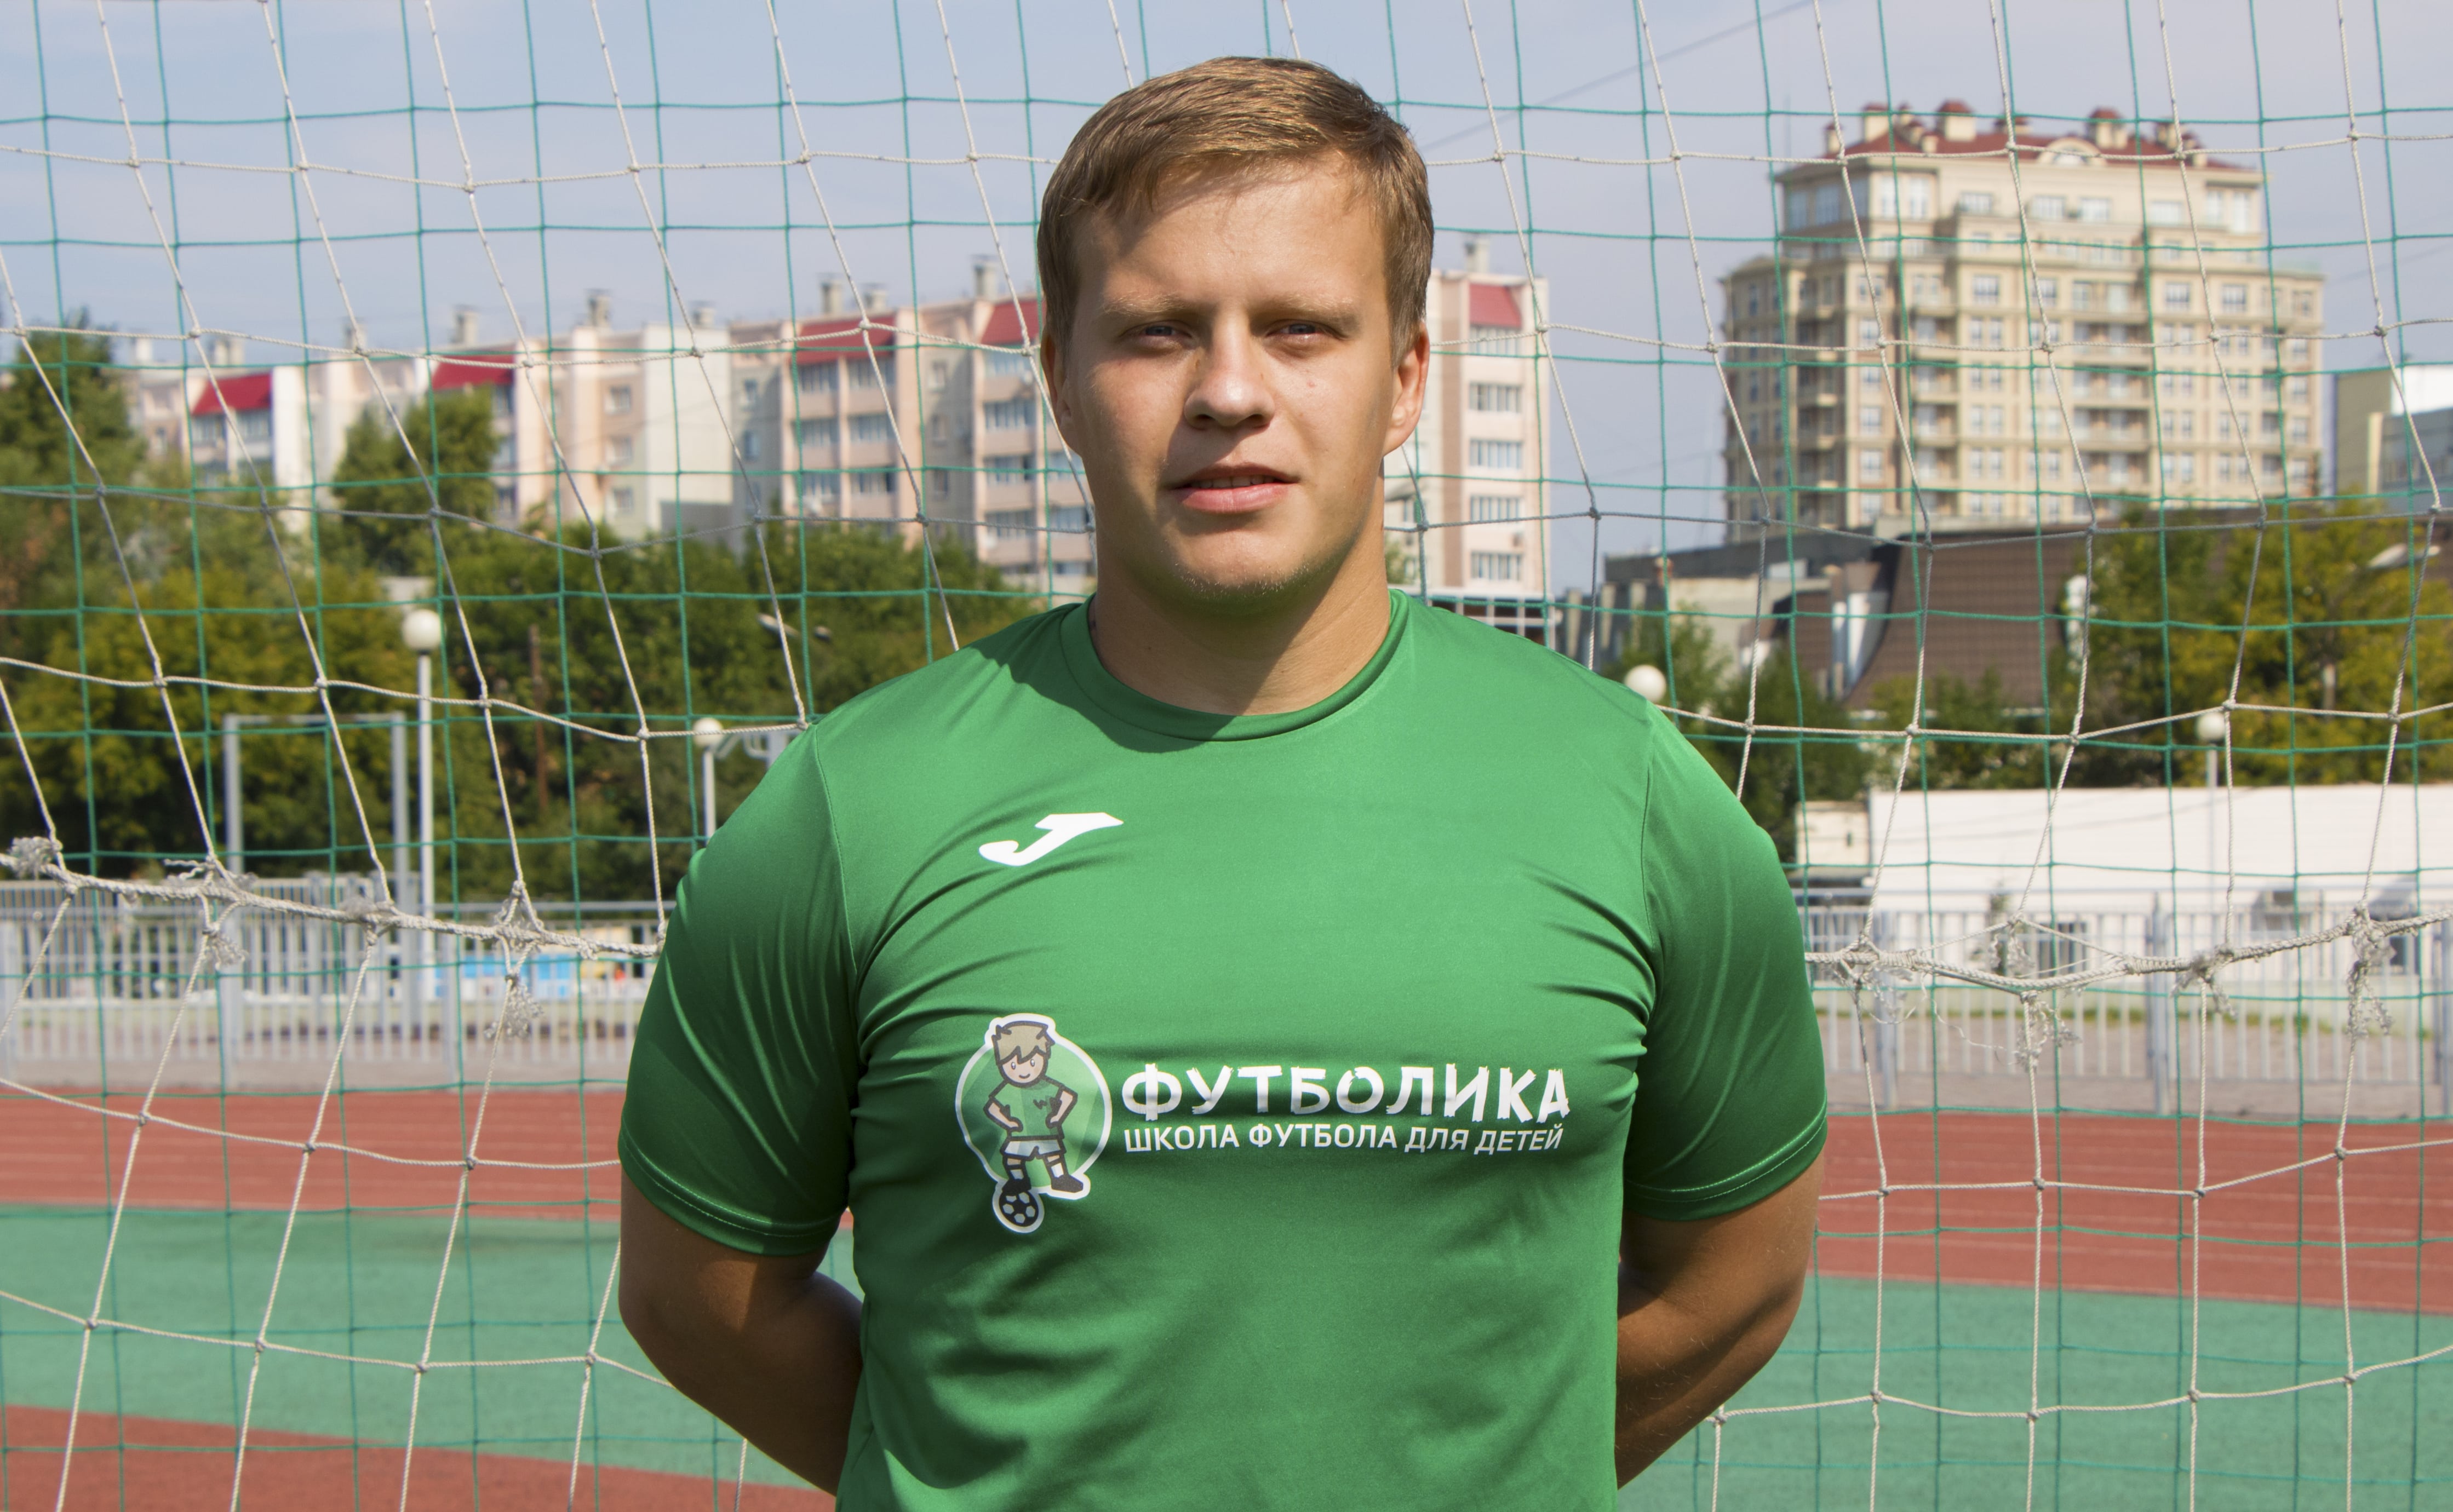 тренер футболики Суханов Олег